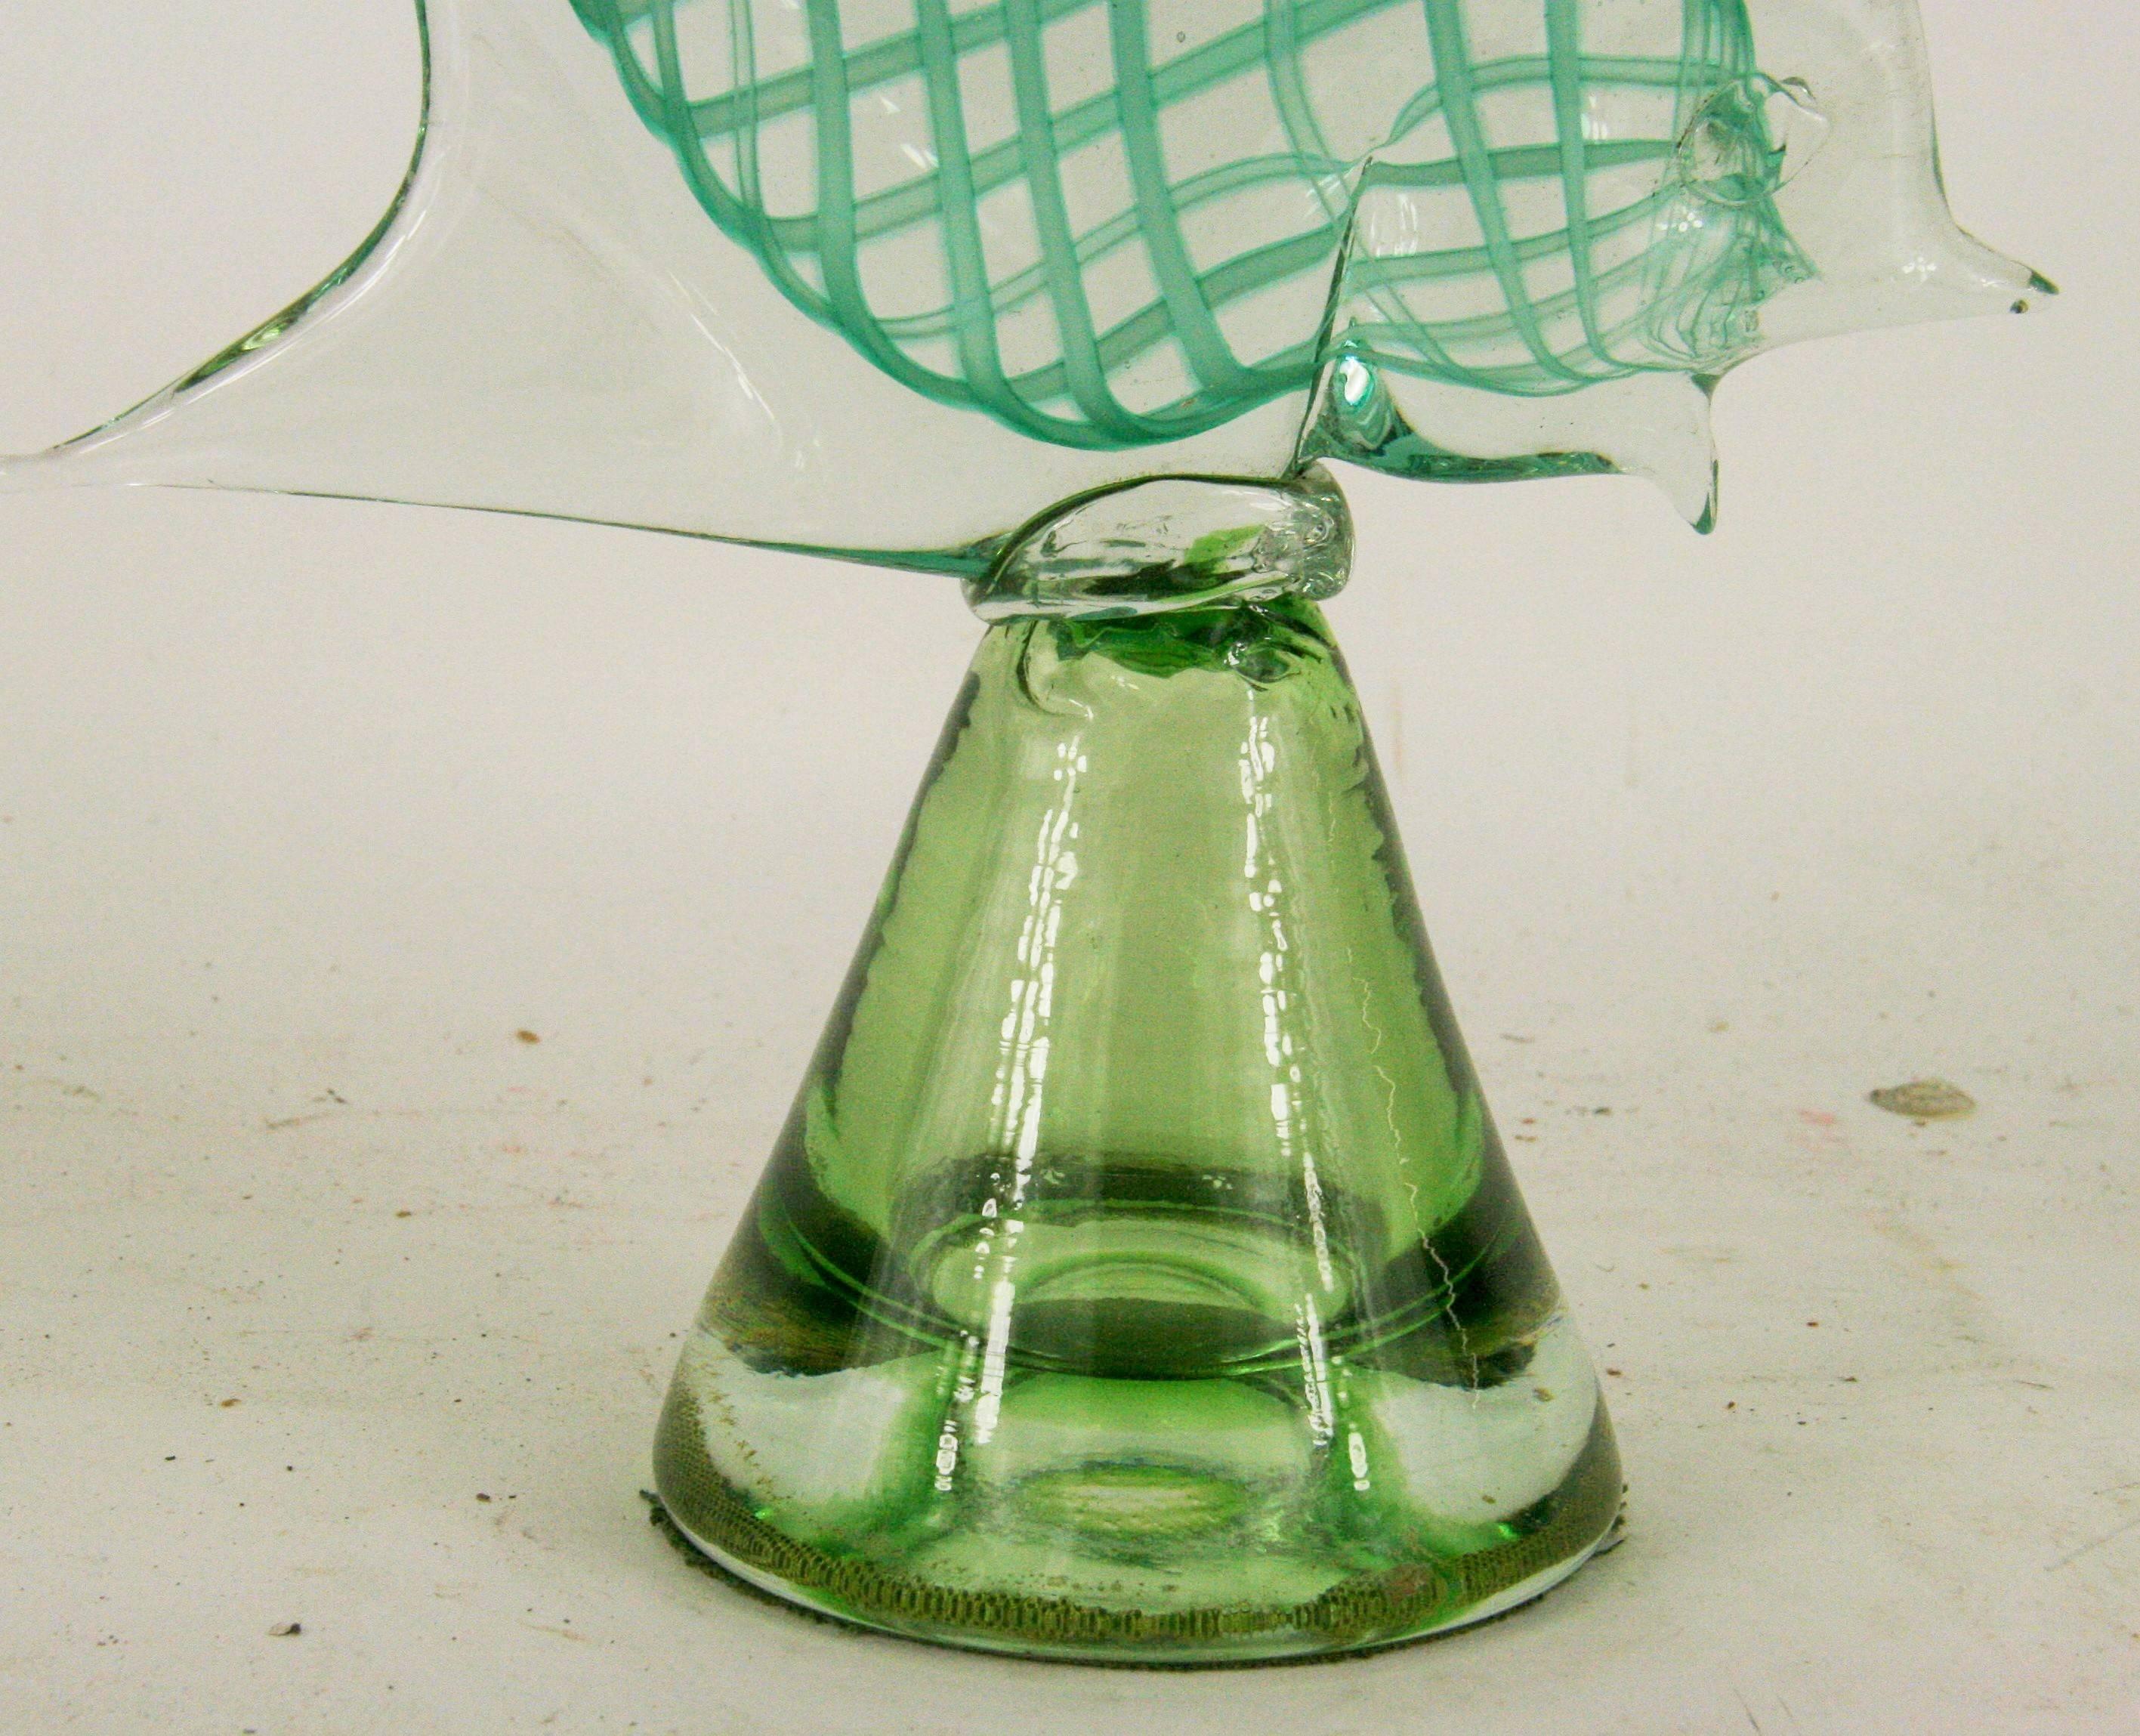 1960er Jahre Murano handgemachtes Kunstglas  fischskulptur mit sich kreuzenden Glasbändern auf der Innenseite des Glases. Steht auf einem mundgeblasenen Sockel. Filz auf der Unterseite.